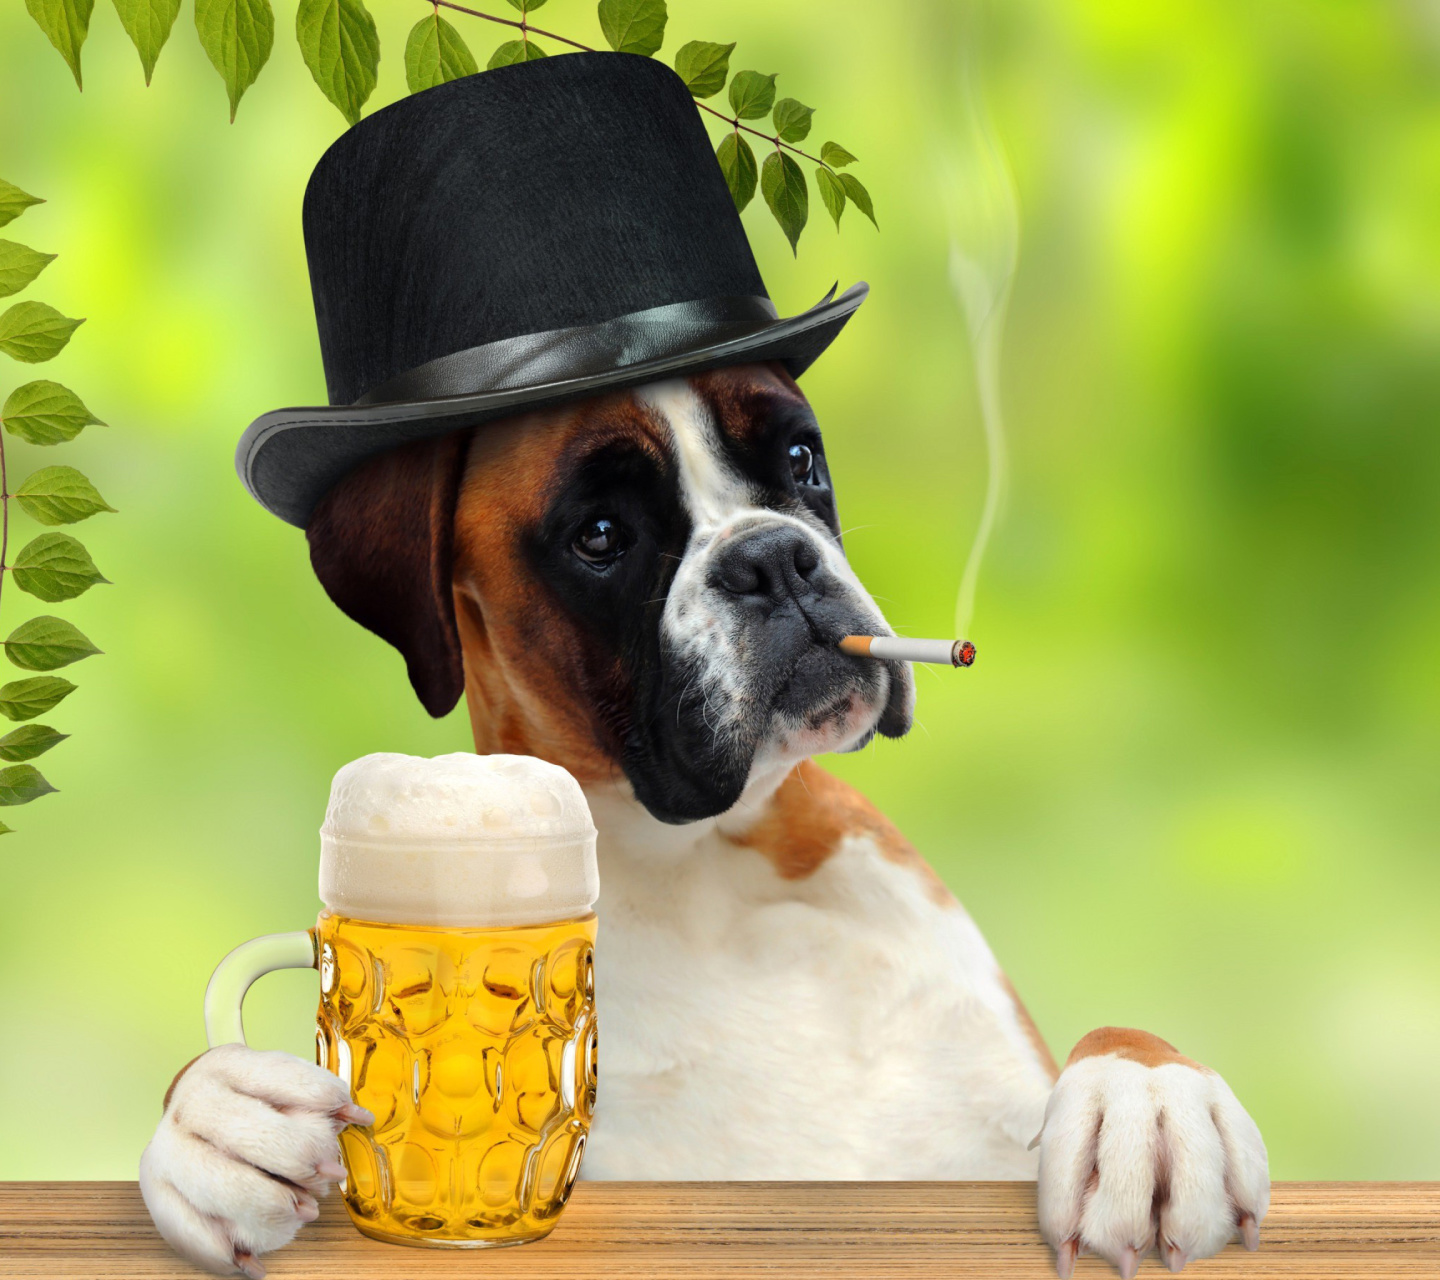 Dog drinking beer screenshot #1 1440x1280